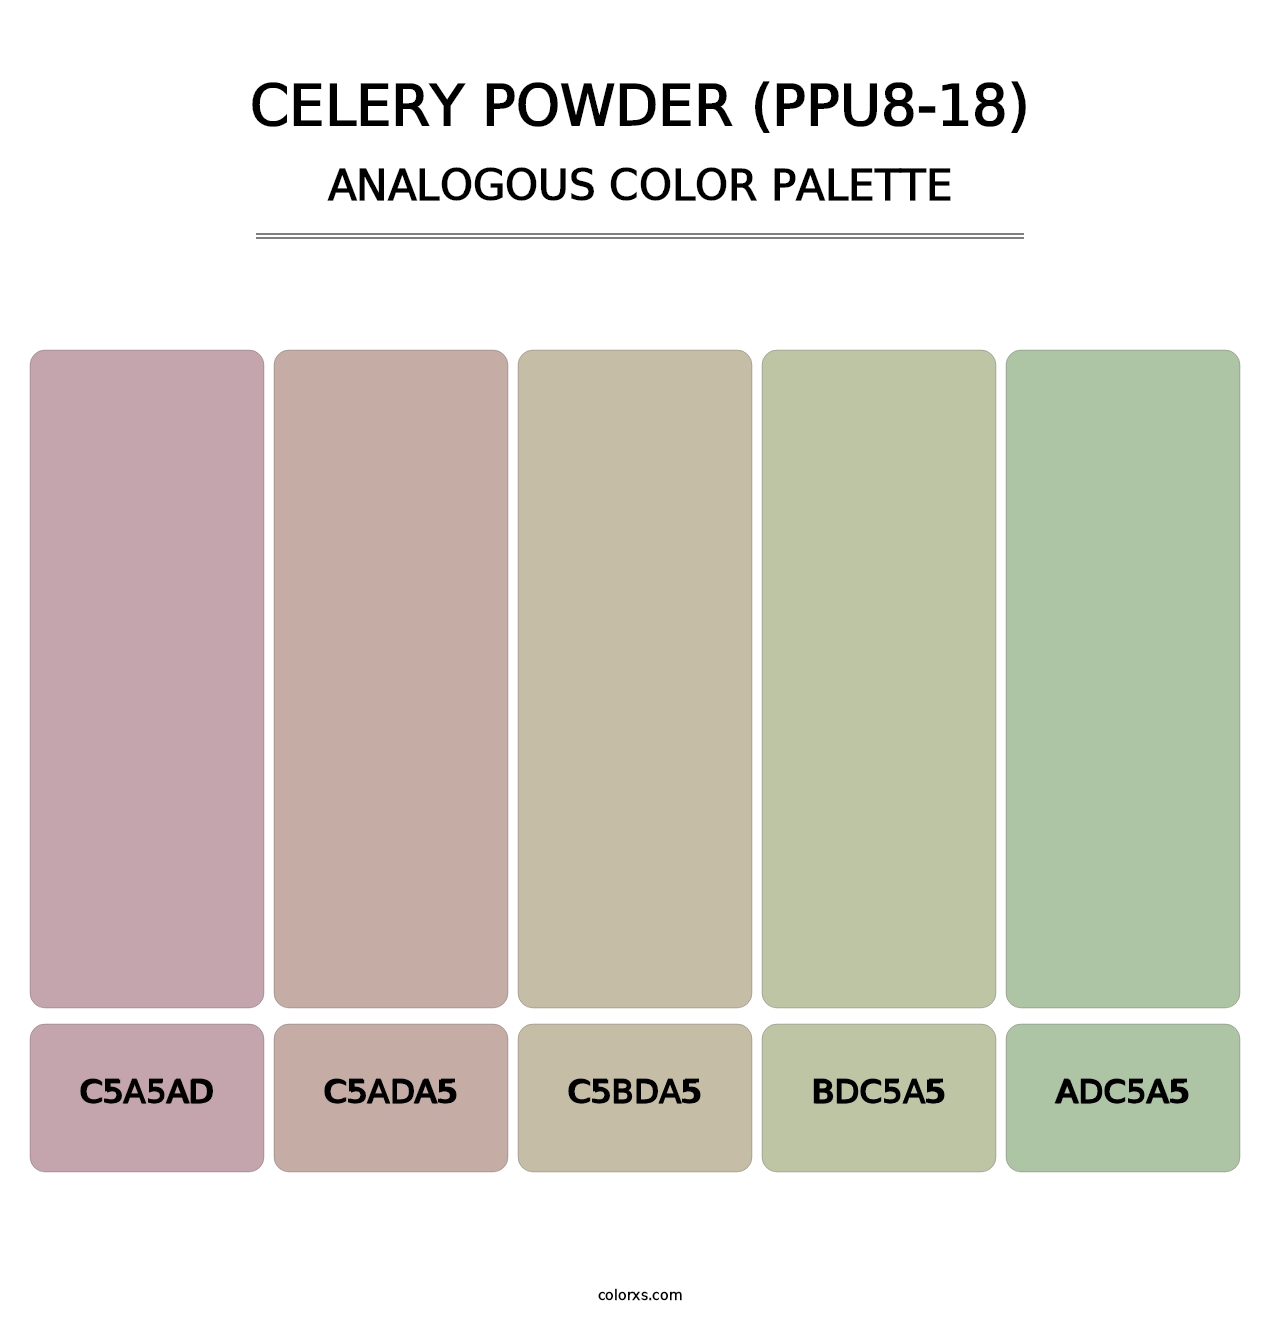 Celery Powder (PPU8-18) - Analogous Color Palette